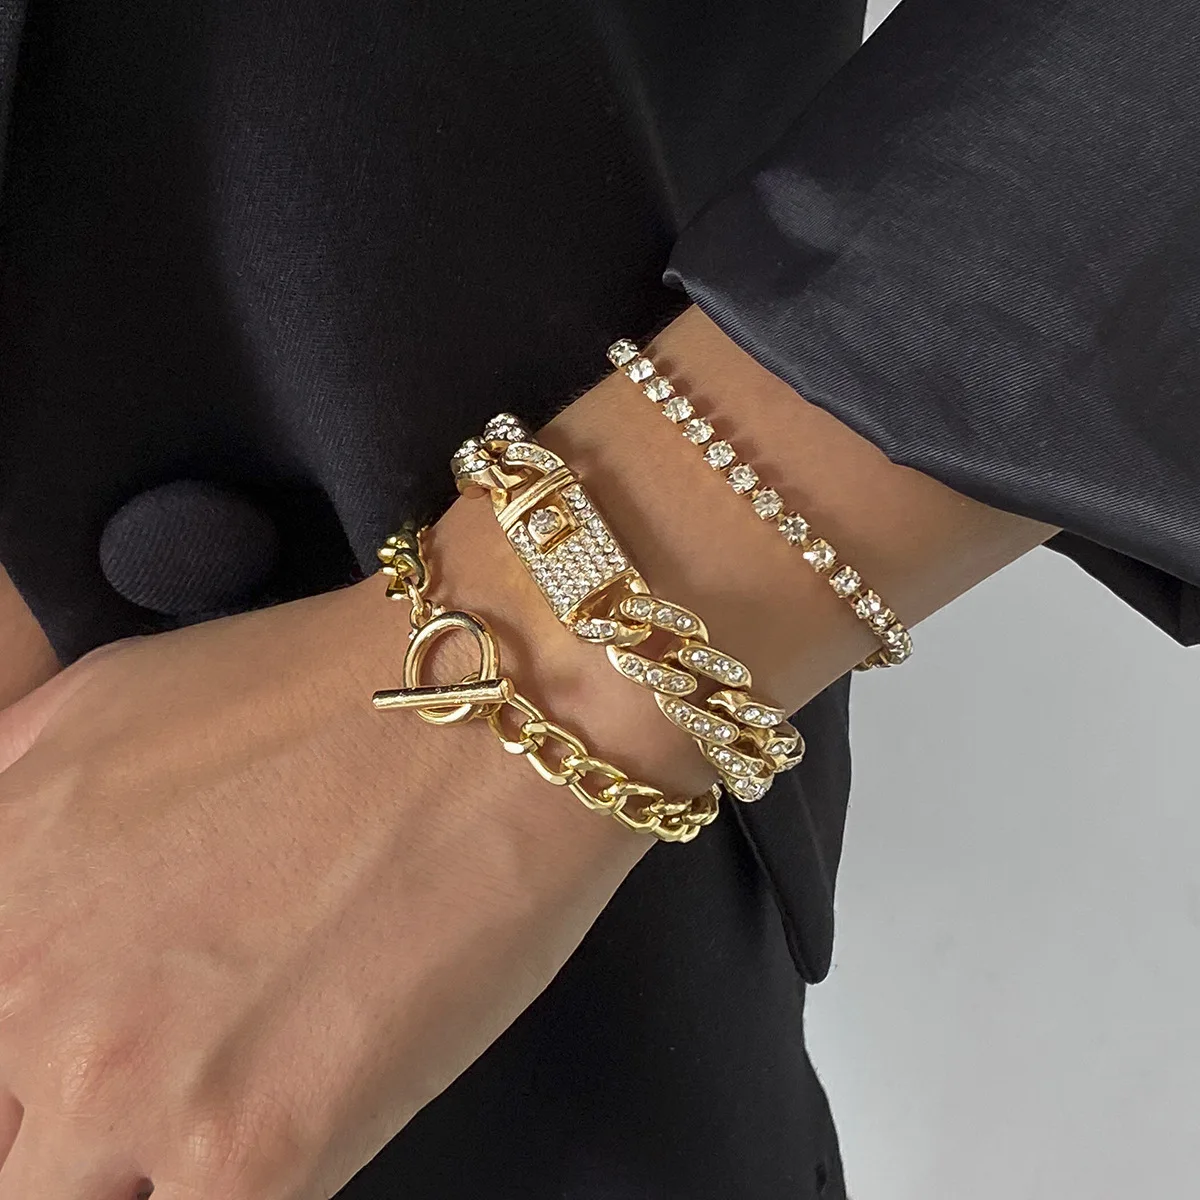 Thick Chain Bracelet – Li'l Tings